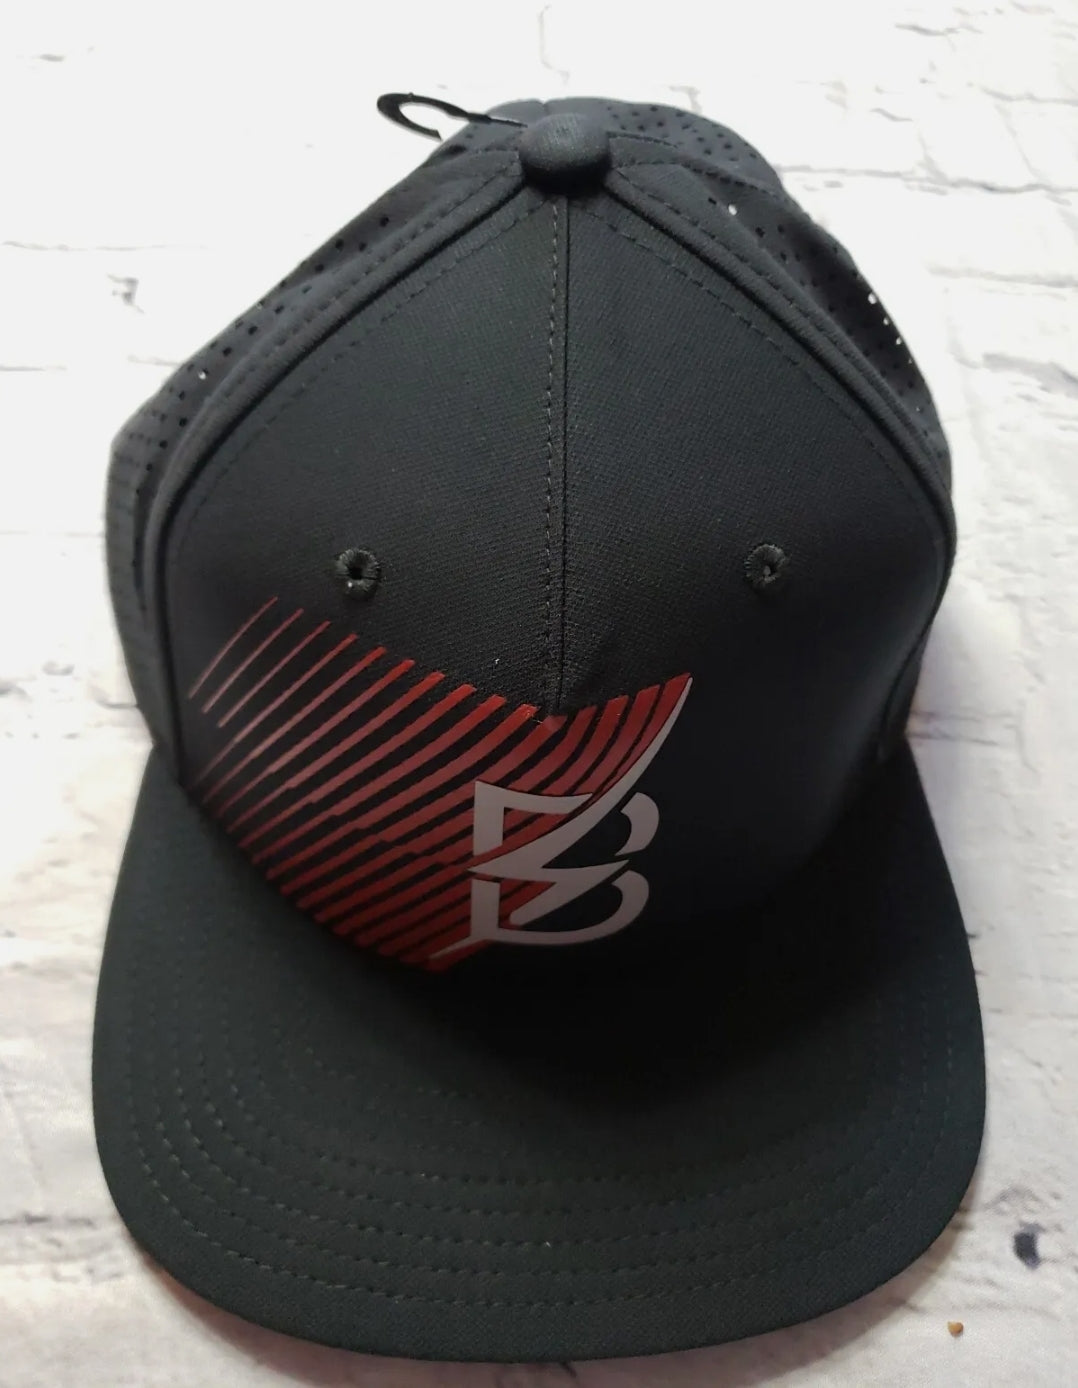 Bowerman Track Club Pro Trucker Hat Nike Men new